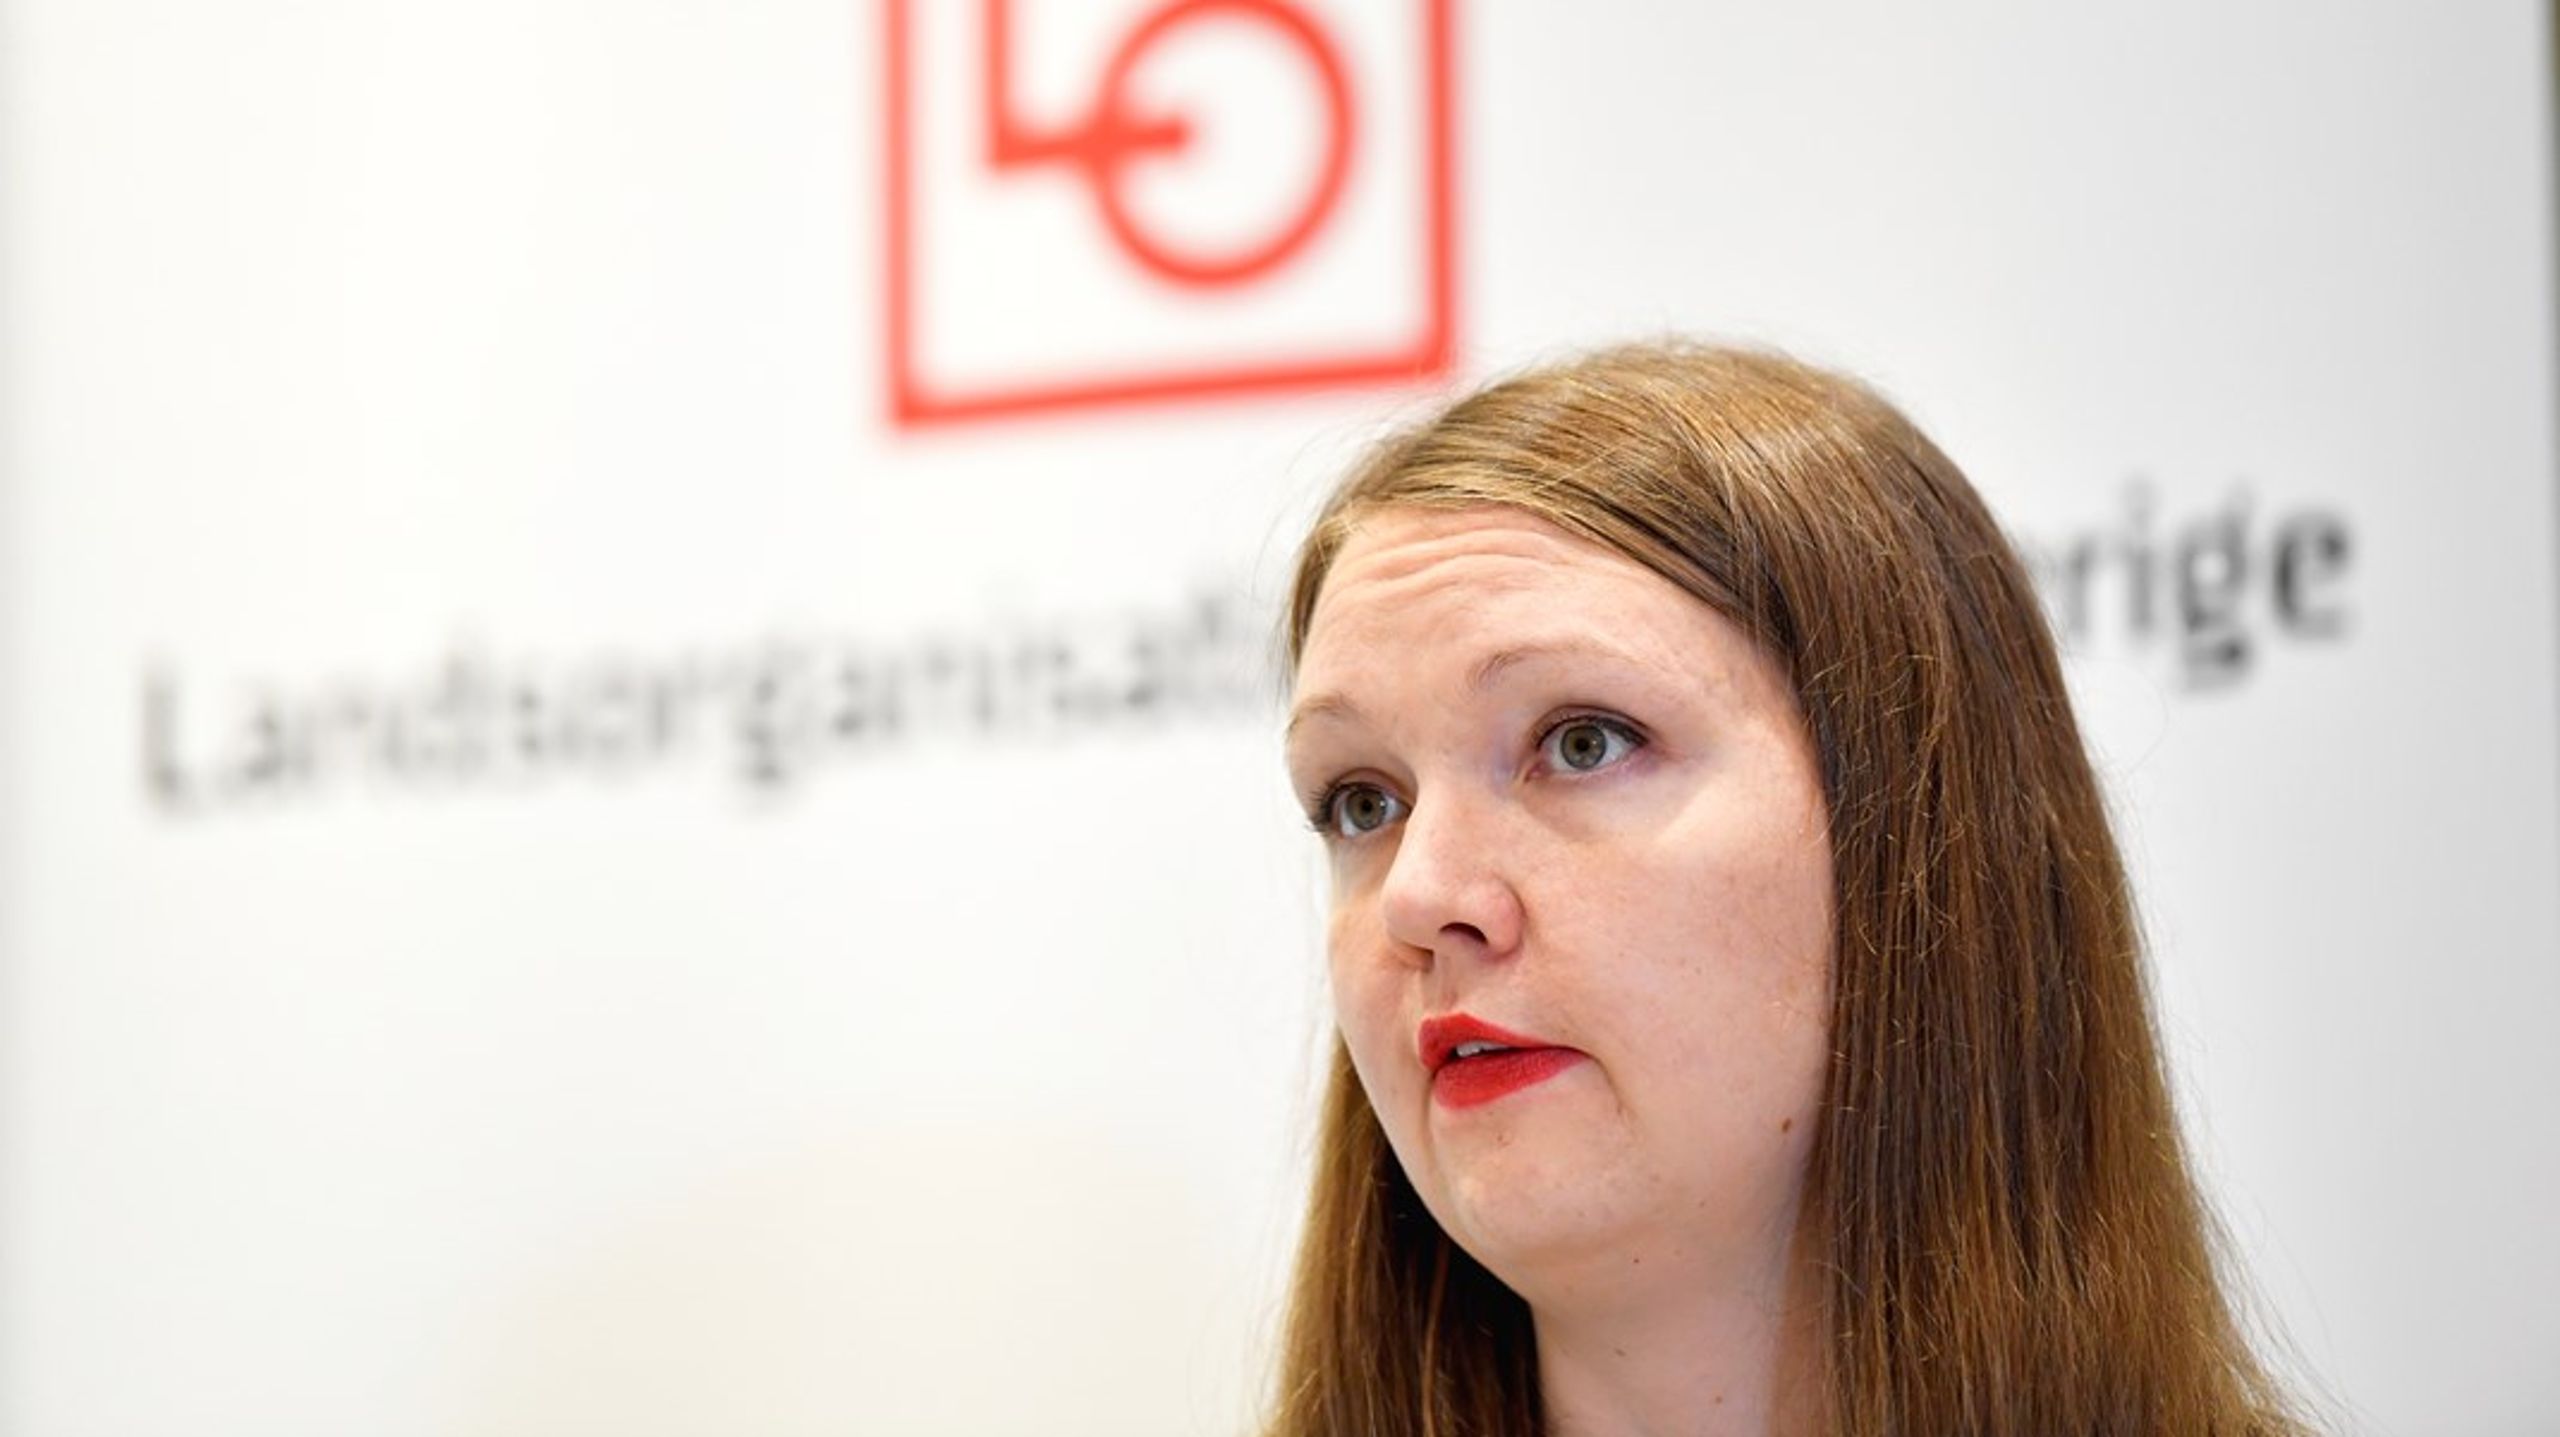 ”Jag har haft kontakt med departementet och de har framfört att man från regeringens sida vill ha en utredare som inte har min partipolitiska koppling”, säger Marika Lindgren Åsbrink till Altinget.